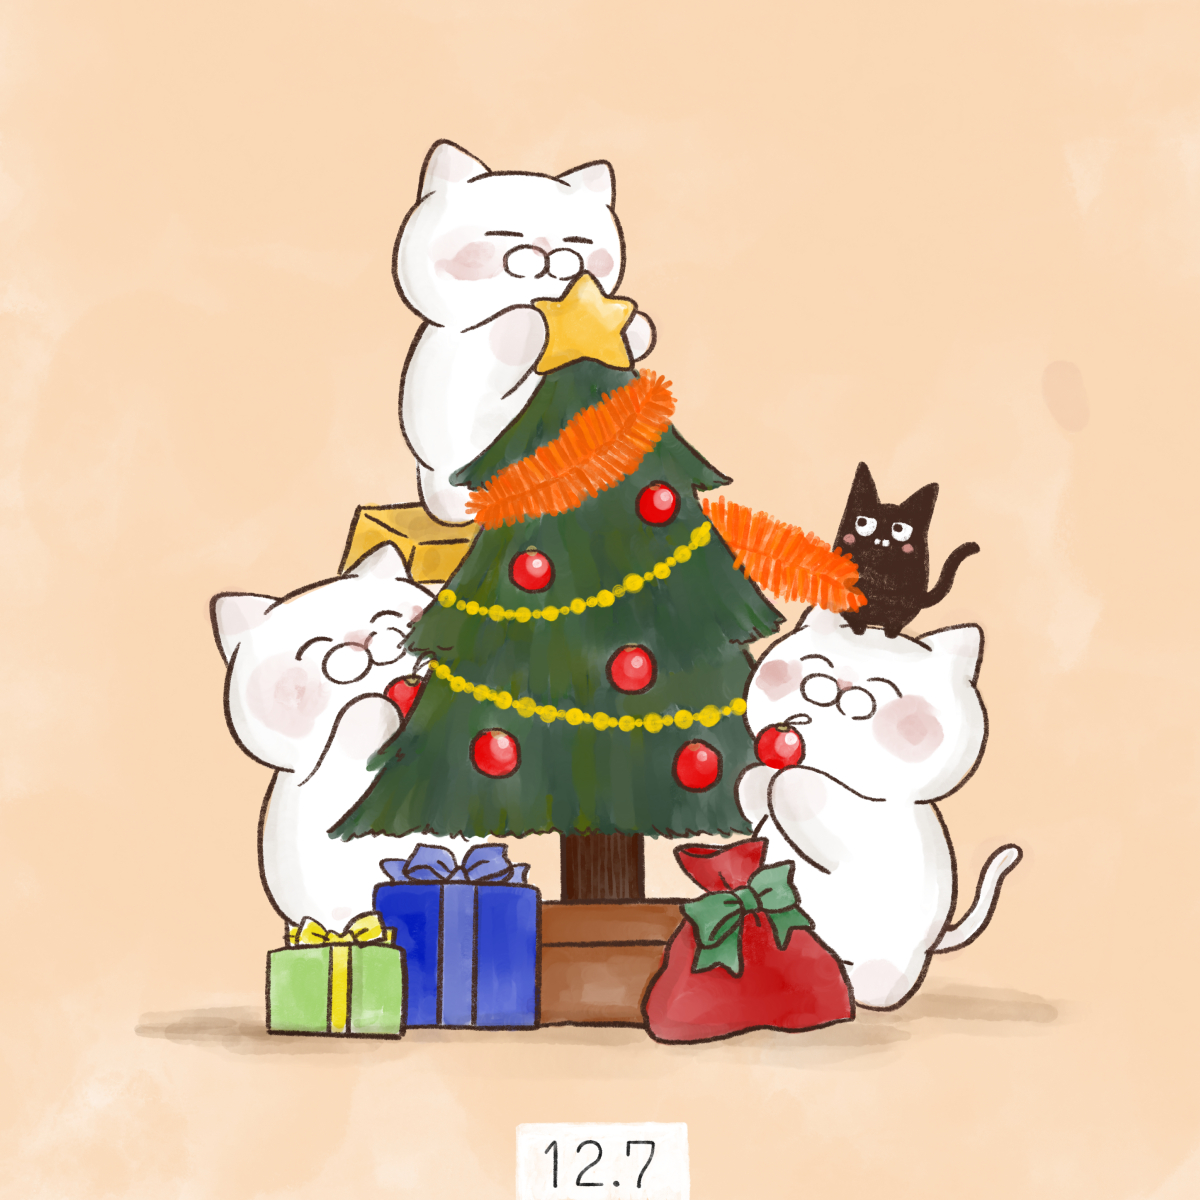 「12月7日
【クリスマスツリーの日】

1886年12月7日に、横浜で外国人船員」|大和猫のイラスト